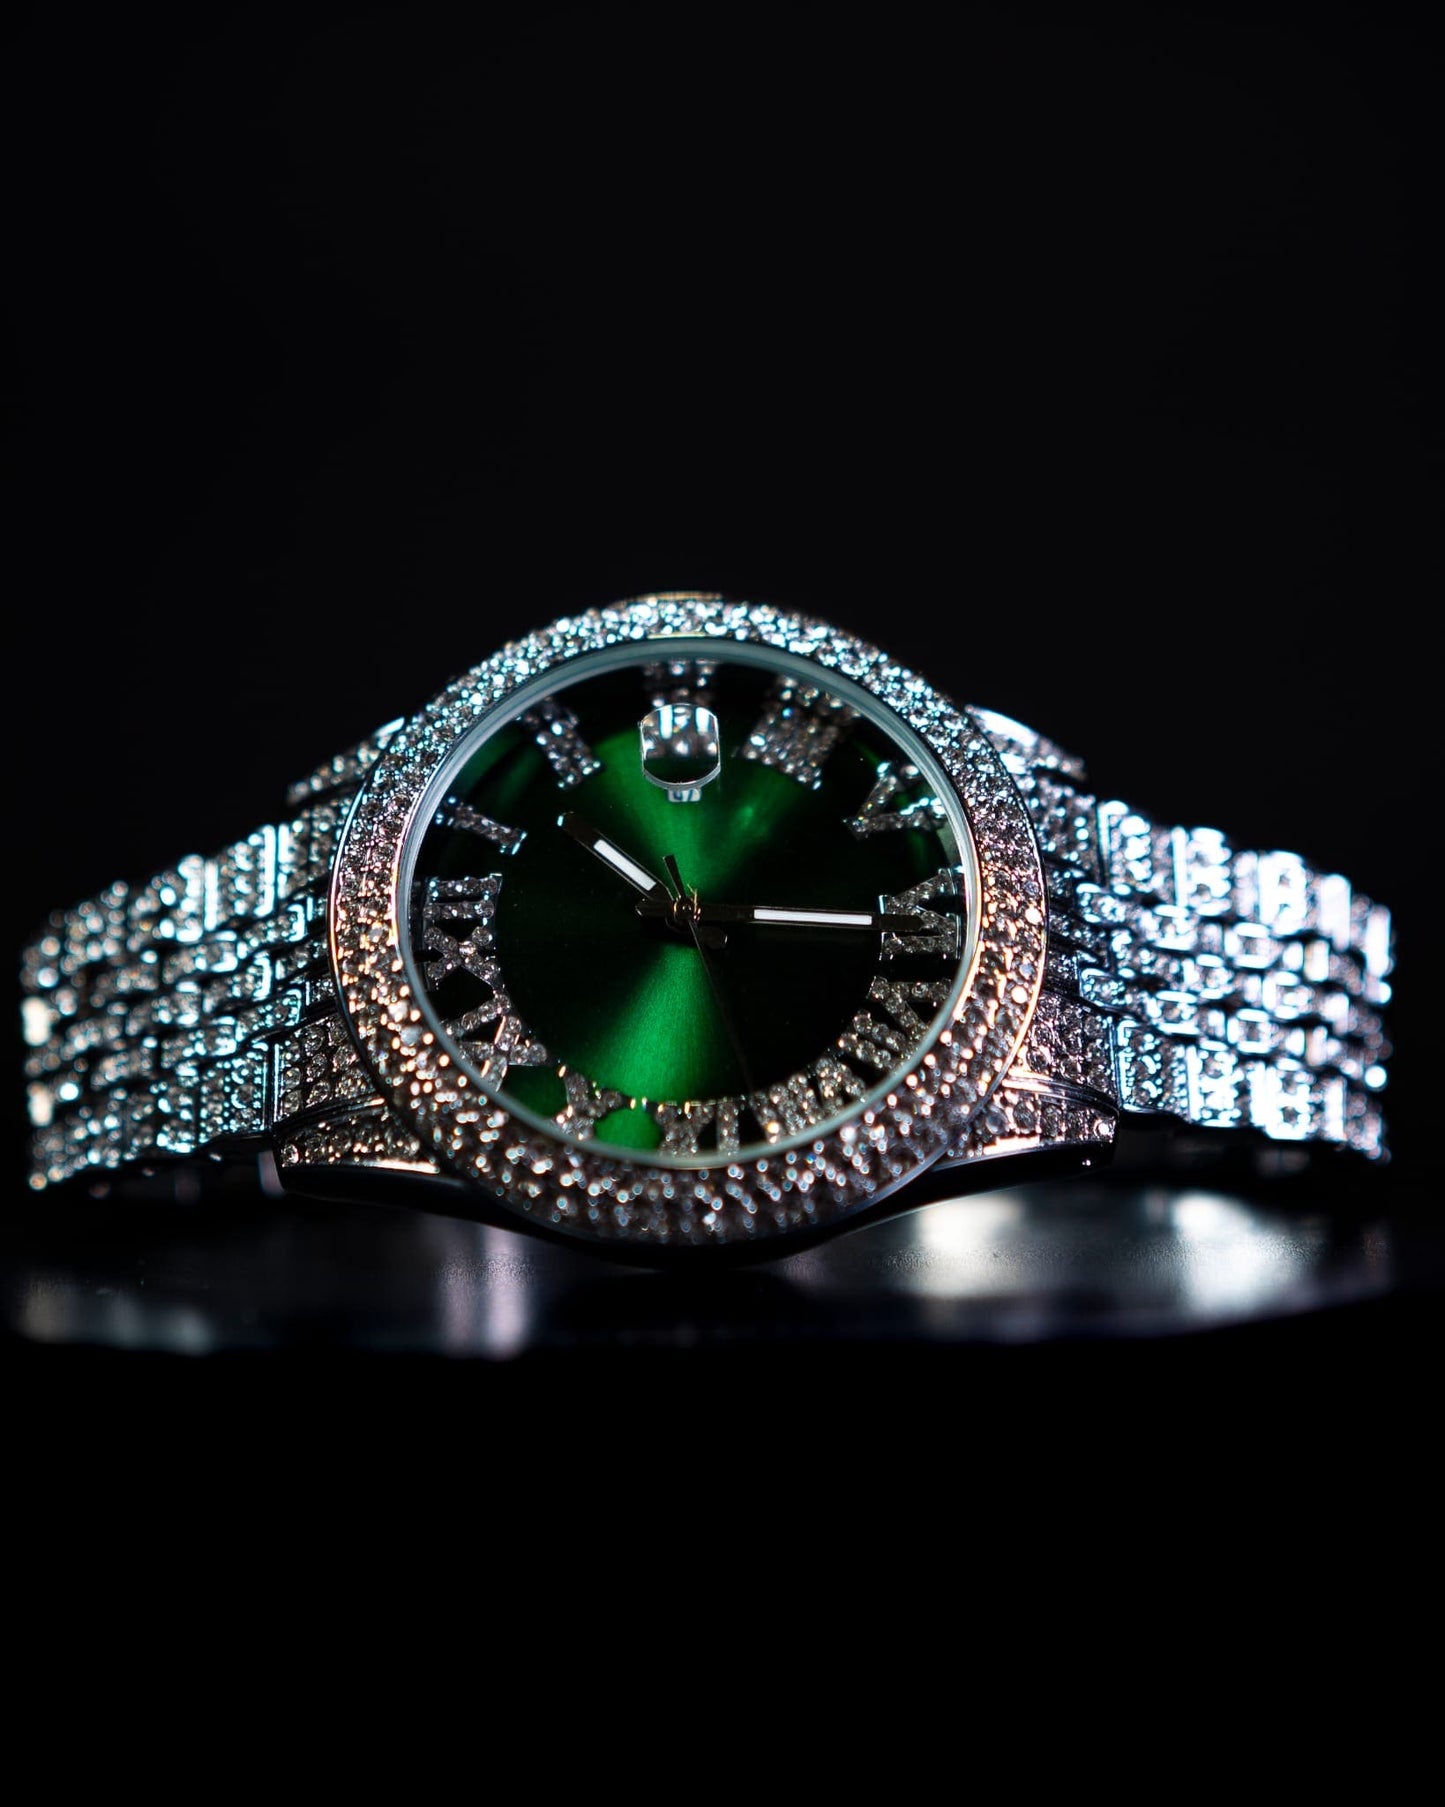 Relógio Ice Royal